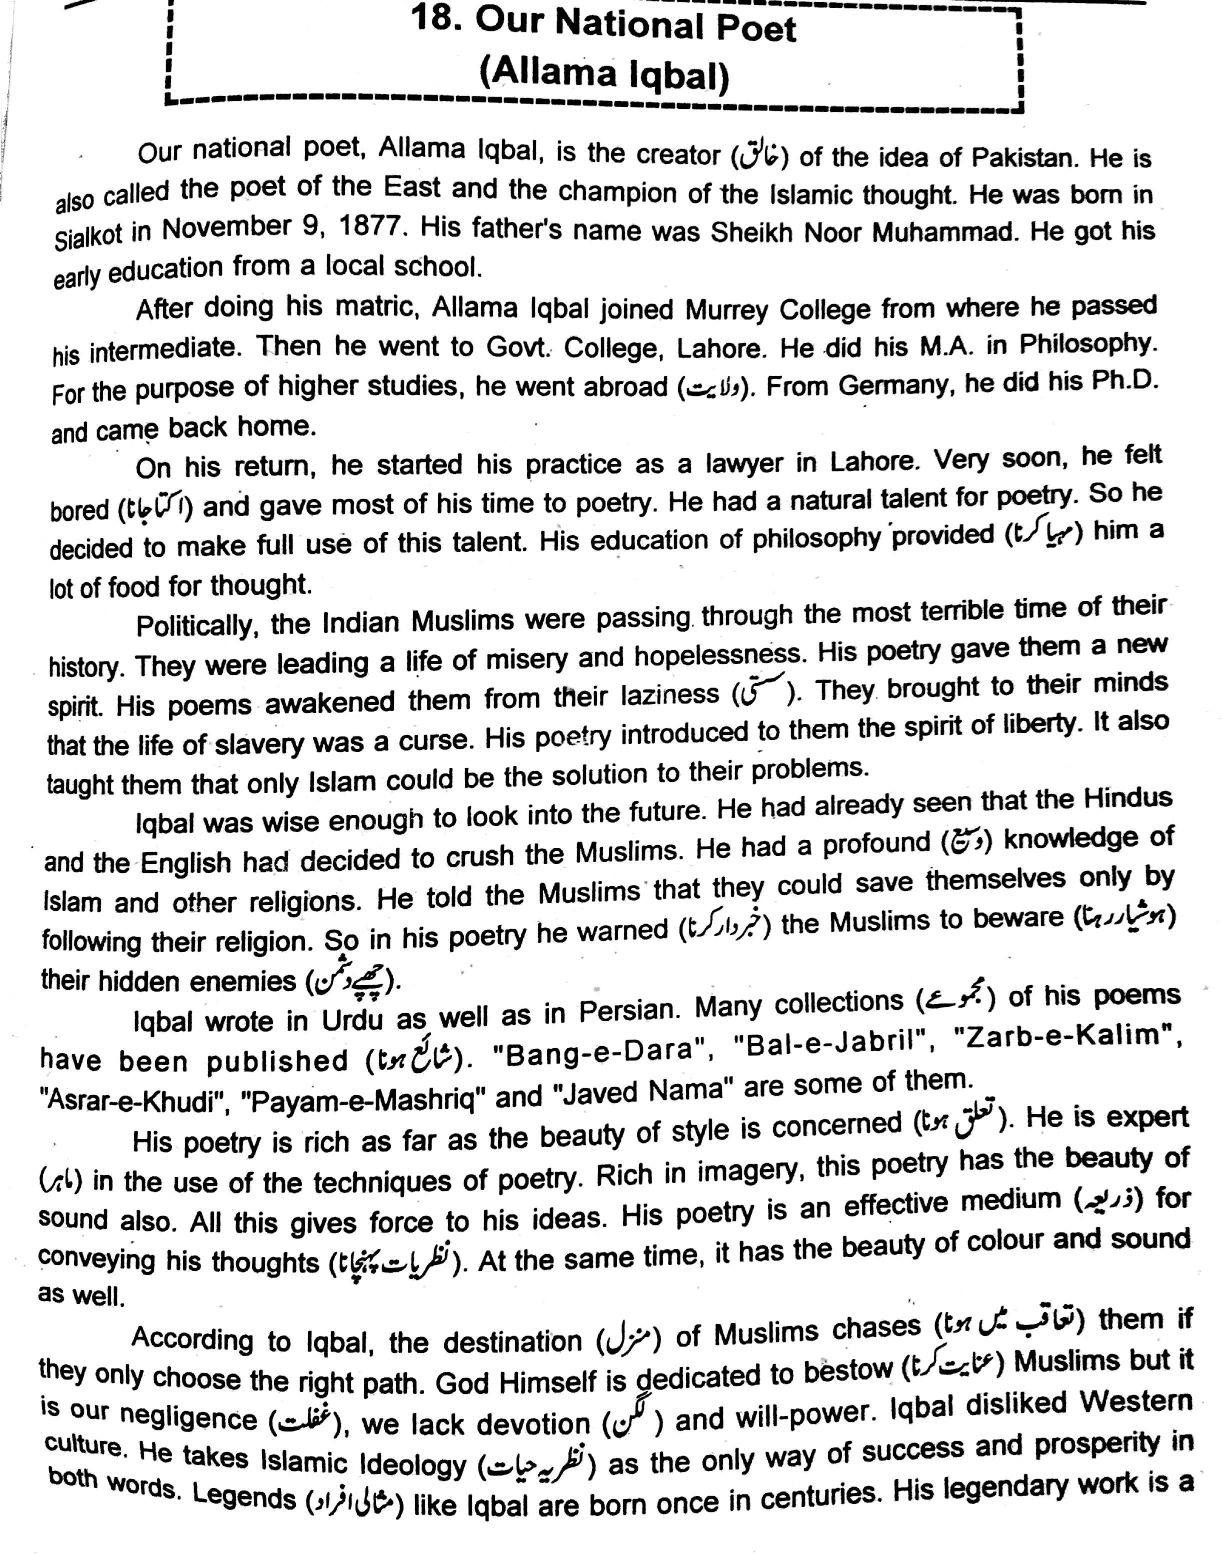 Essay on my favourite poet allama iqbal in urdu